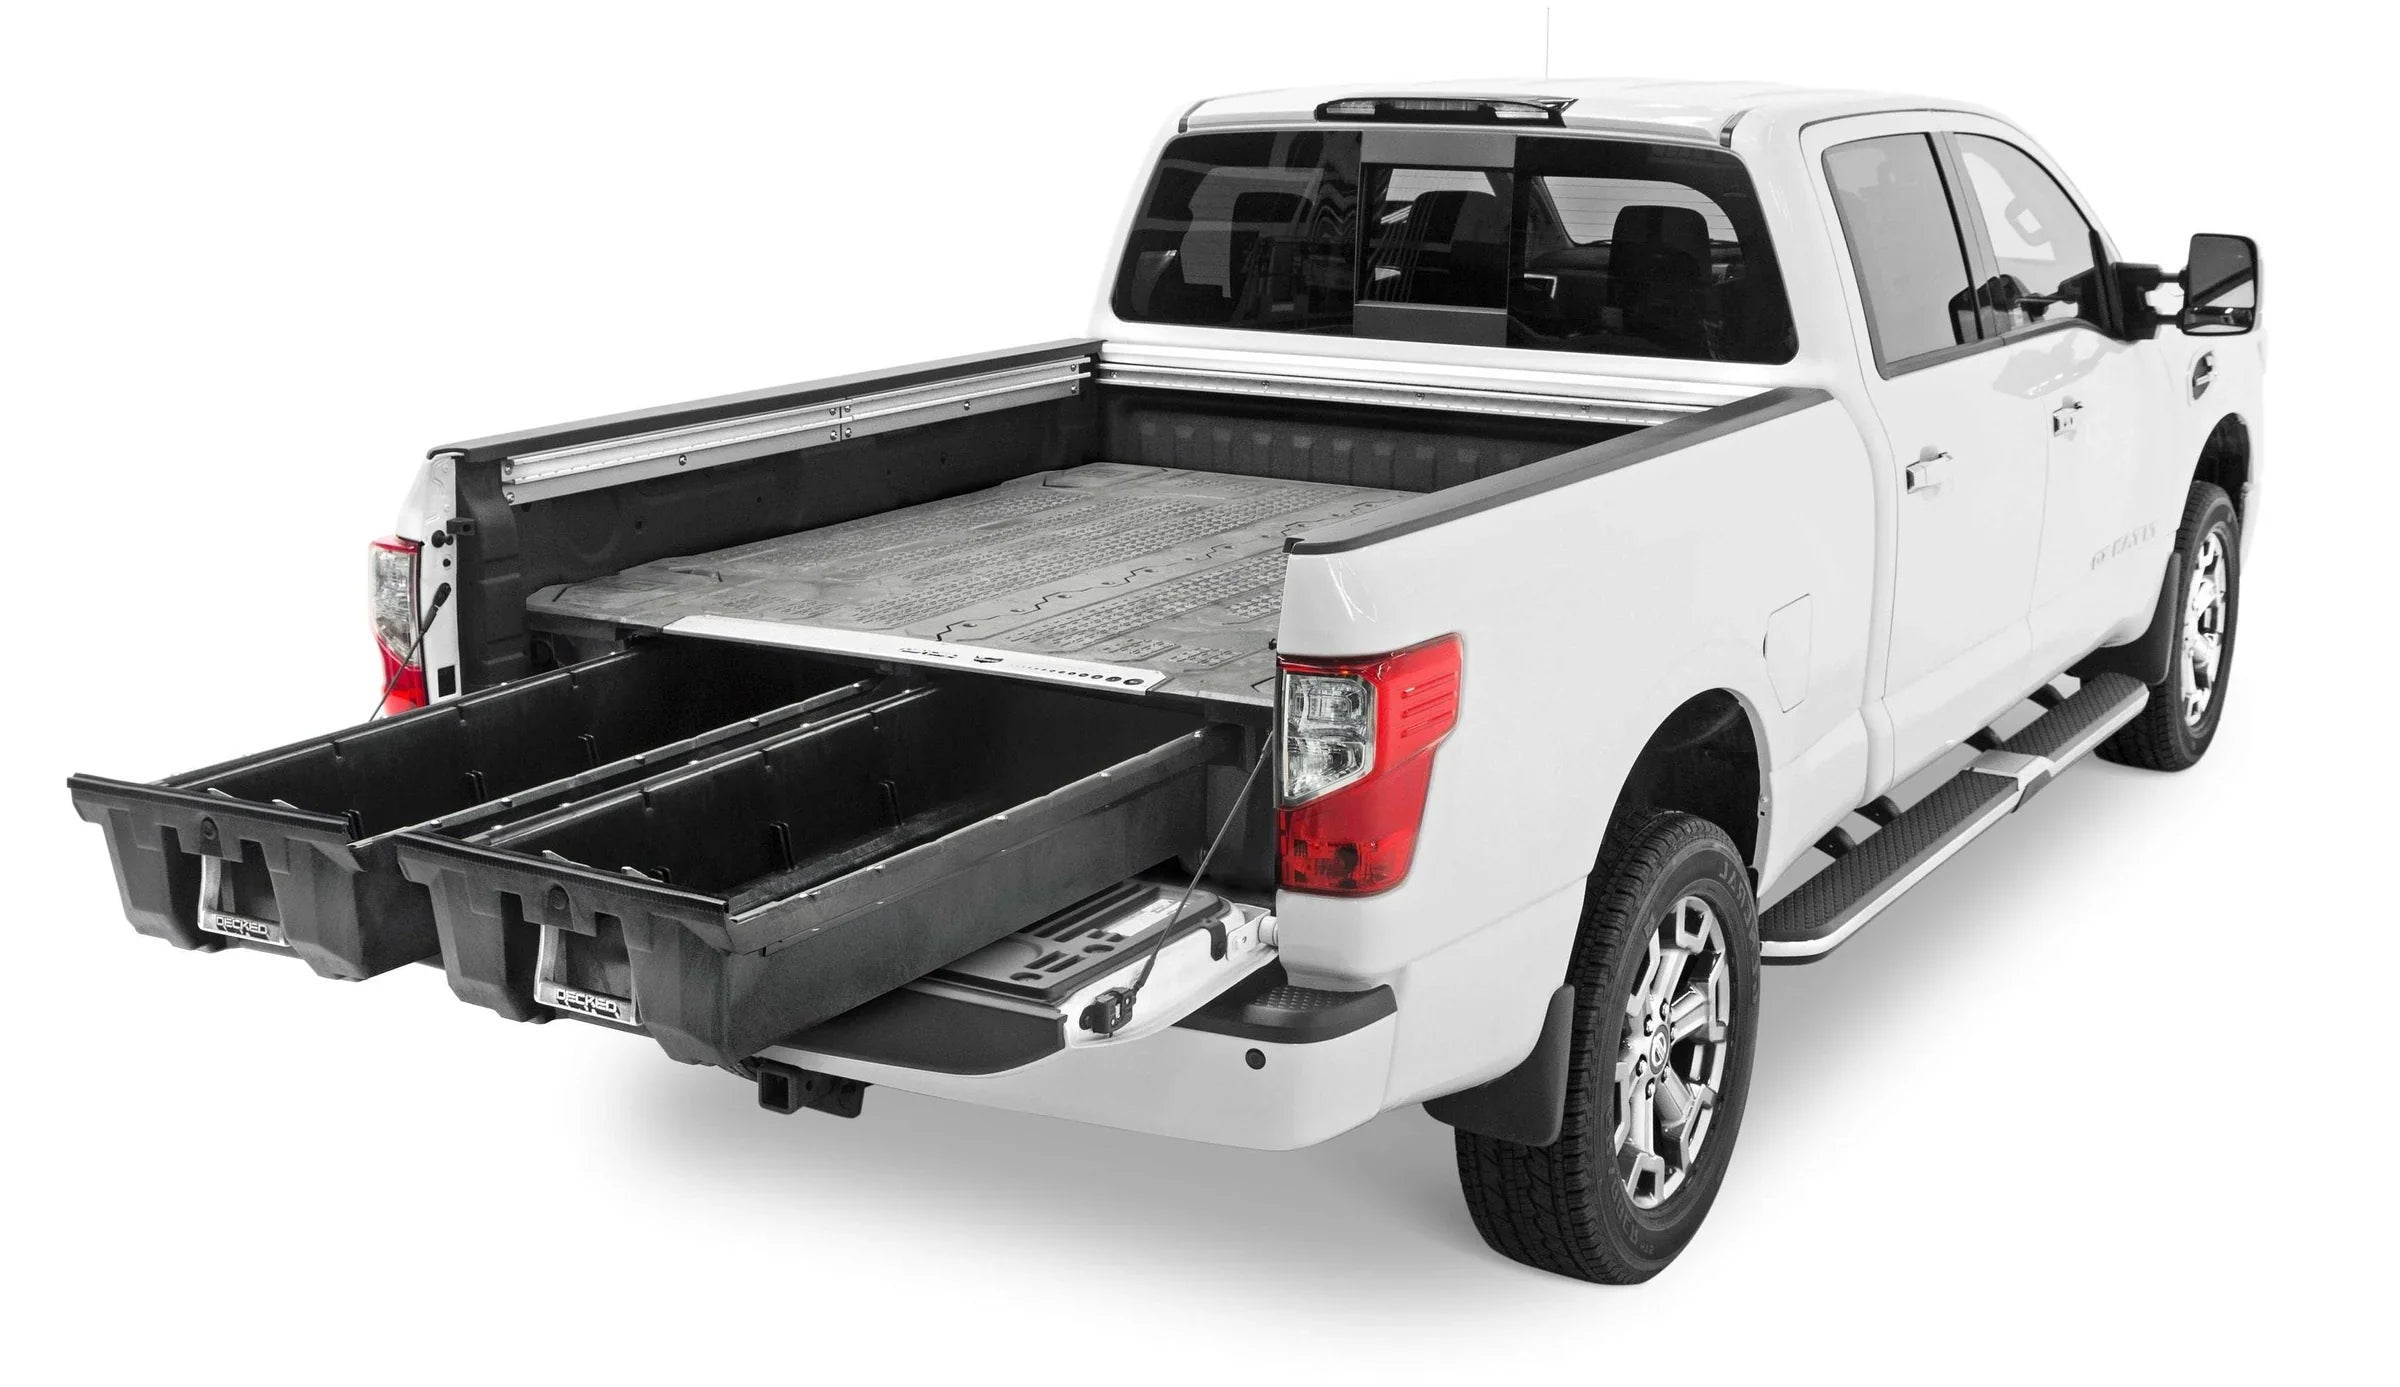 DECKED Nissan Titan Truck Bed Storage System & Organizer